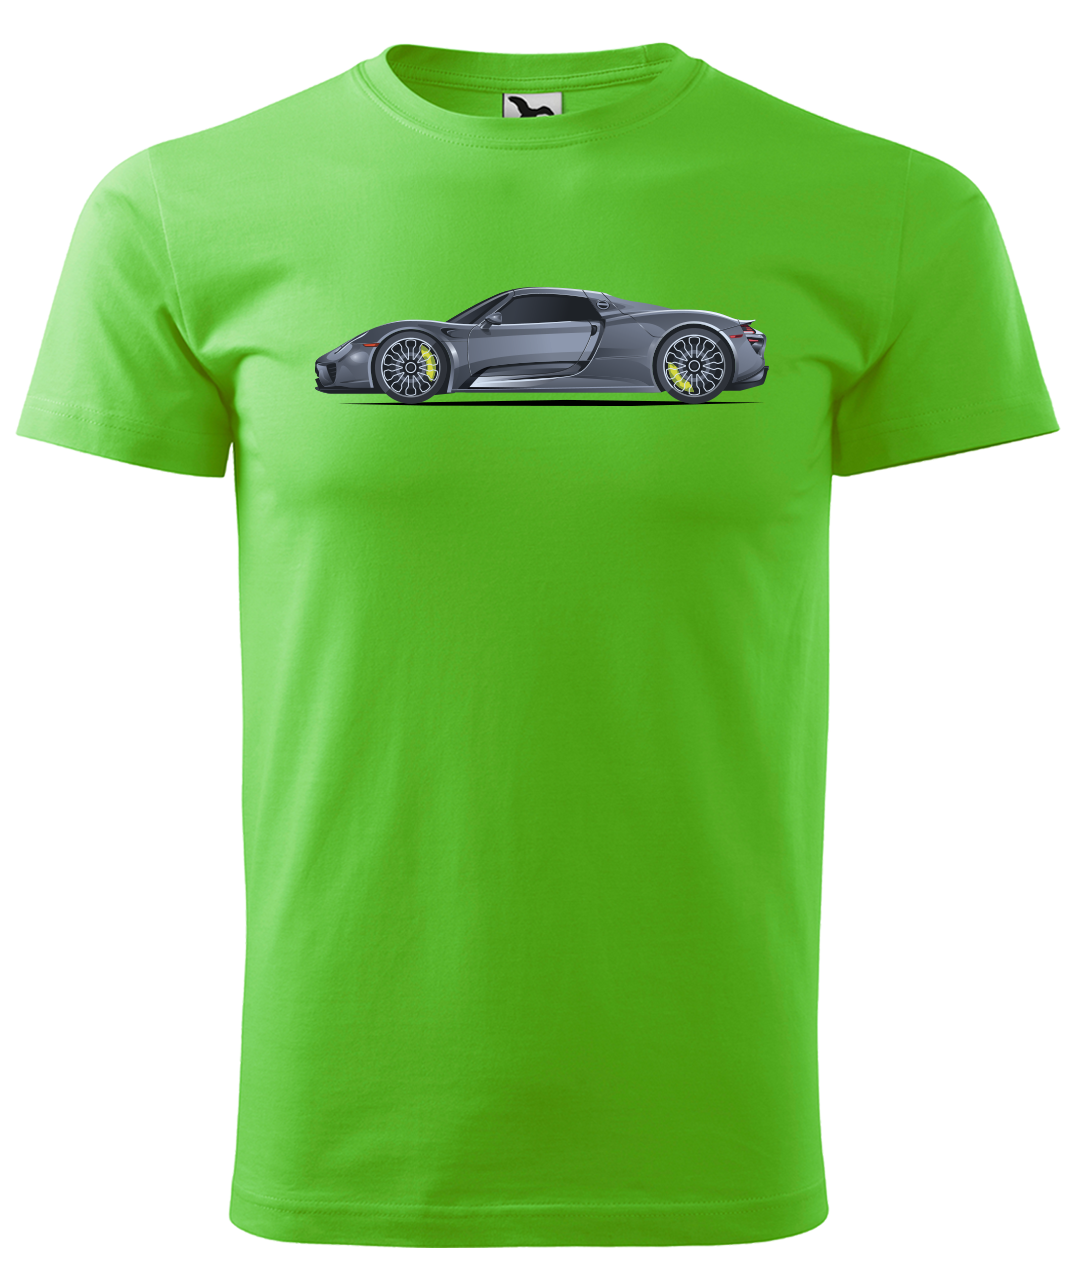 Dětské tričko s autem - Šedý sporťák Velikost: 4 roky / 110 cm, Barva: Apple Green (92)